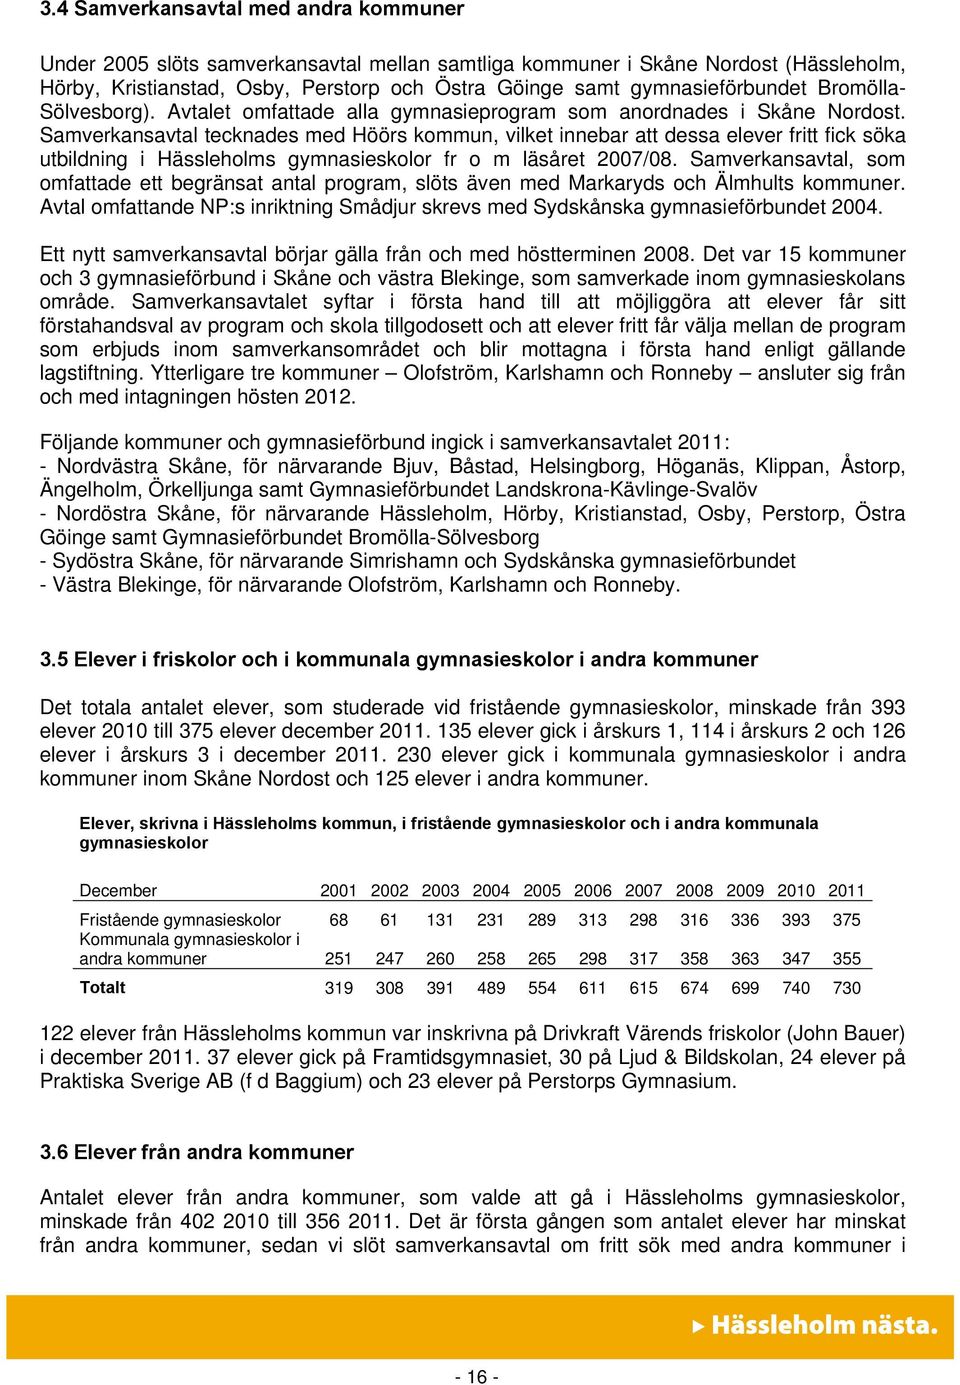 Samverkansavtal tecknades med Höörs kommun, vilket innebar att dessa elever fritt fick söka utbildning i Hässleholms gymnasieskolor fr o m läsåret 2007/08.